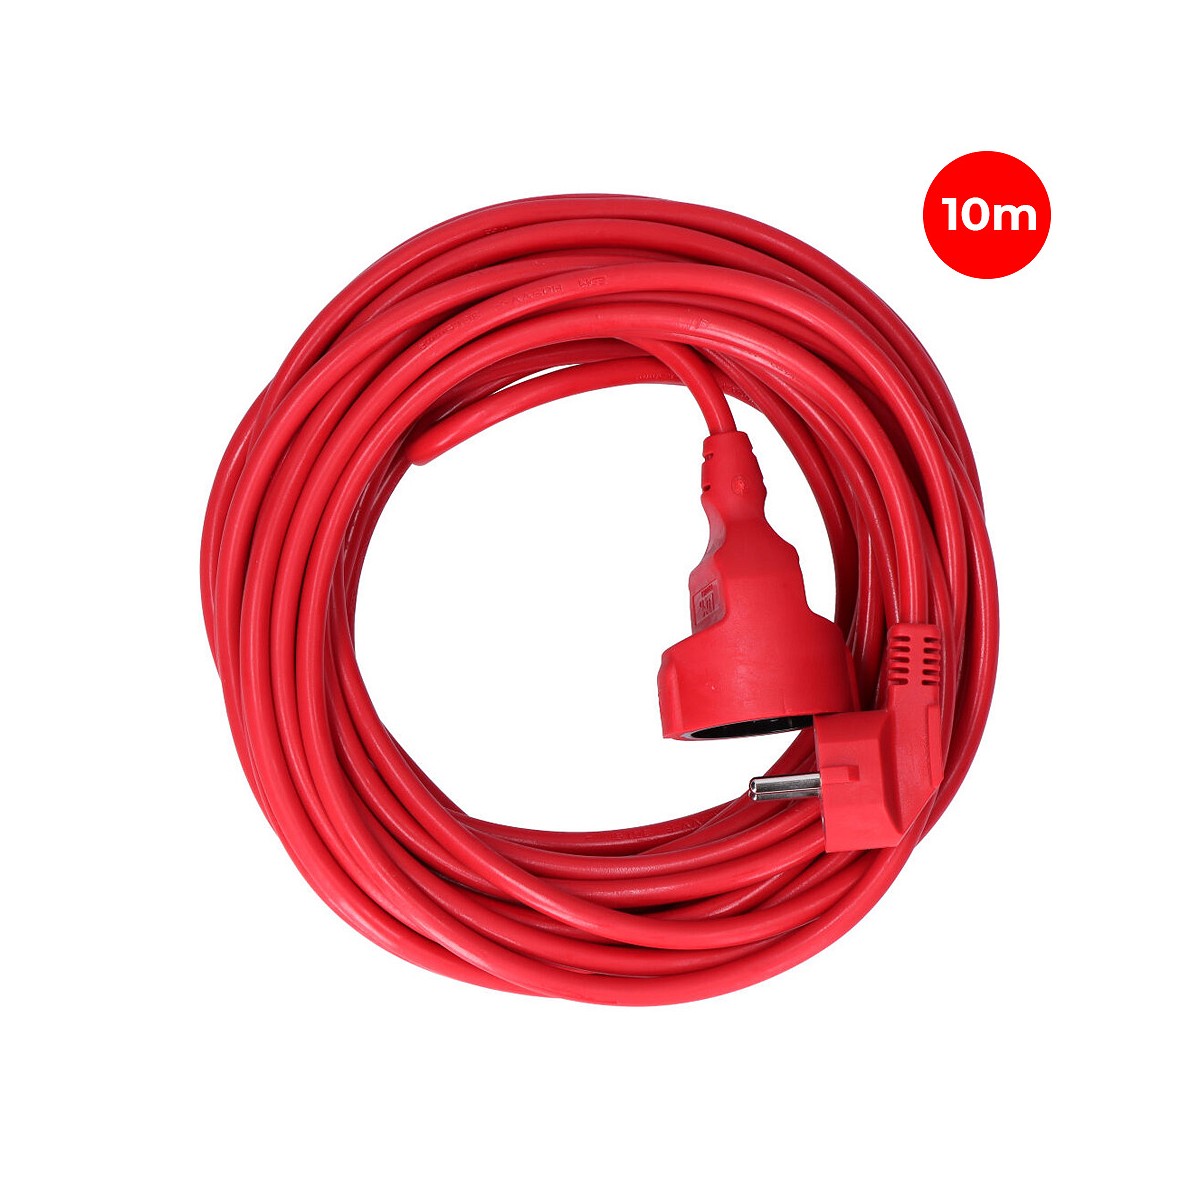 Prolongacion manguera t/tl 10m 3x1,5mm flexible roja edm